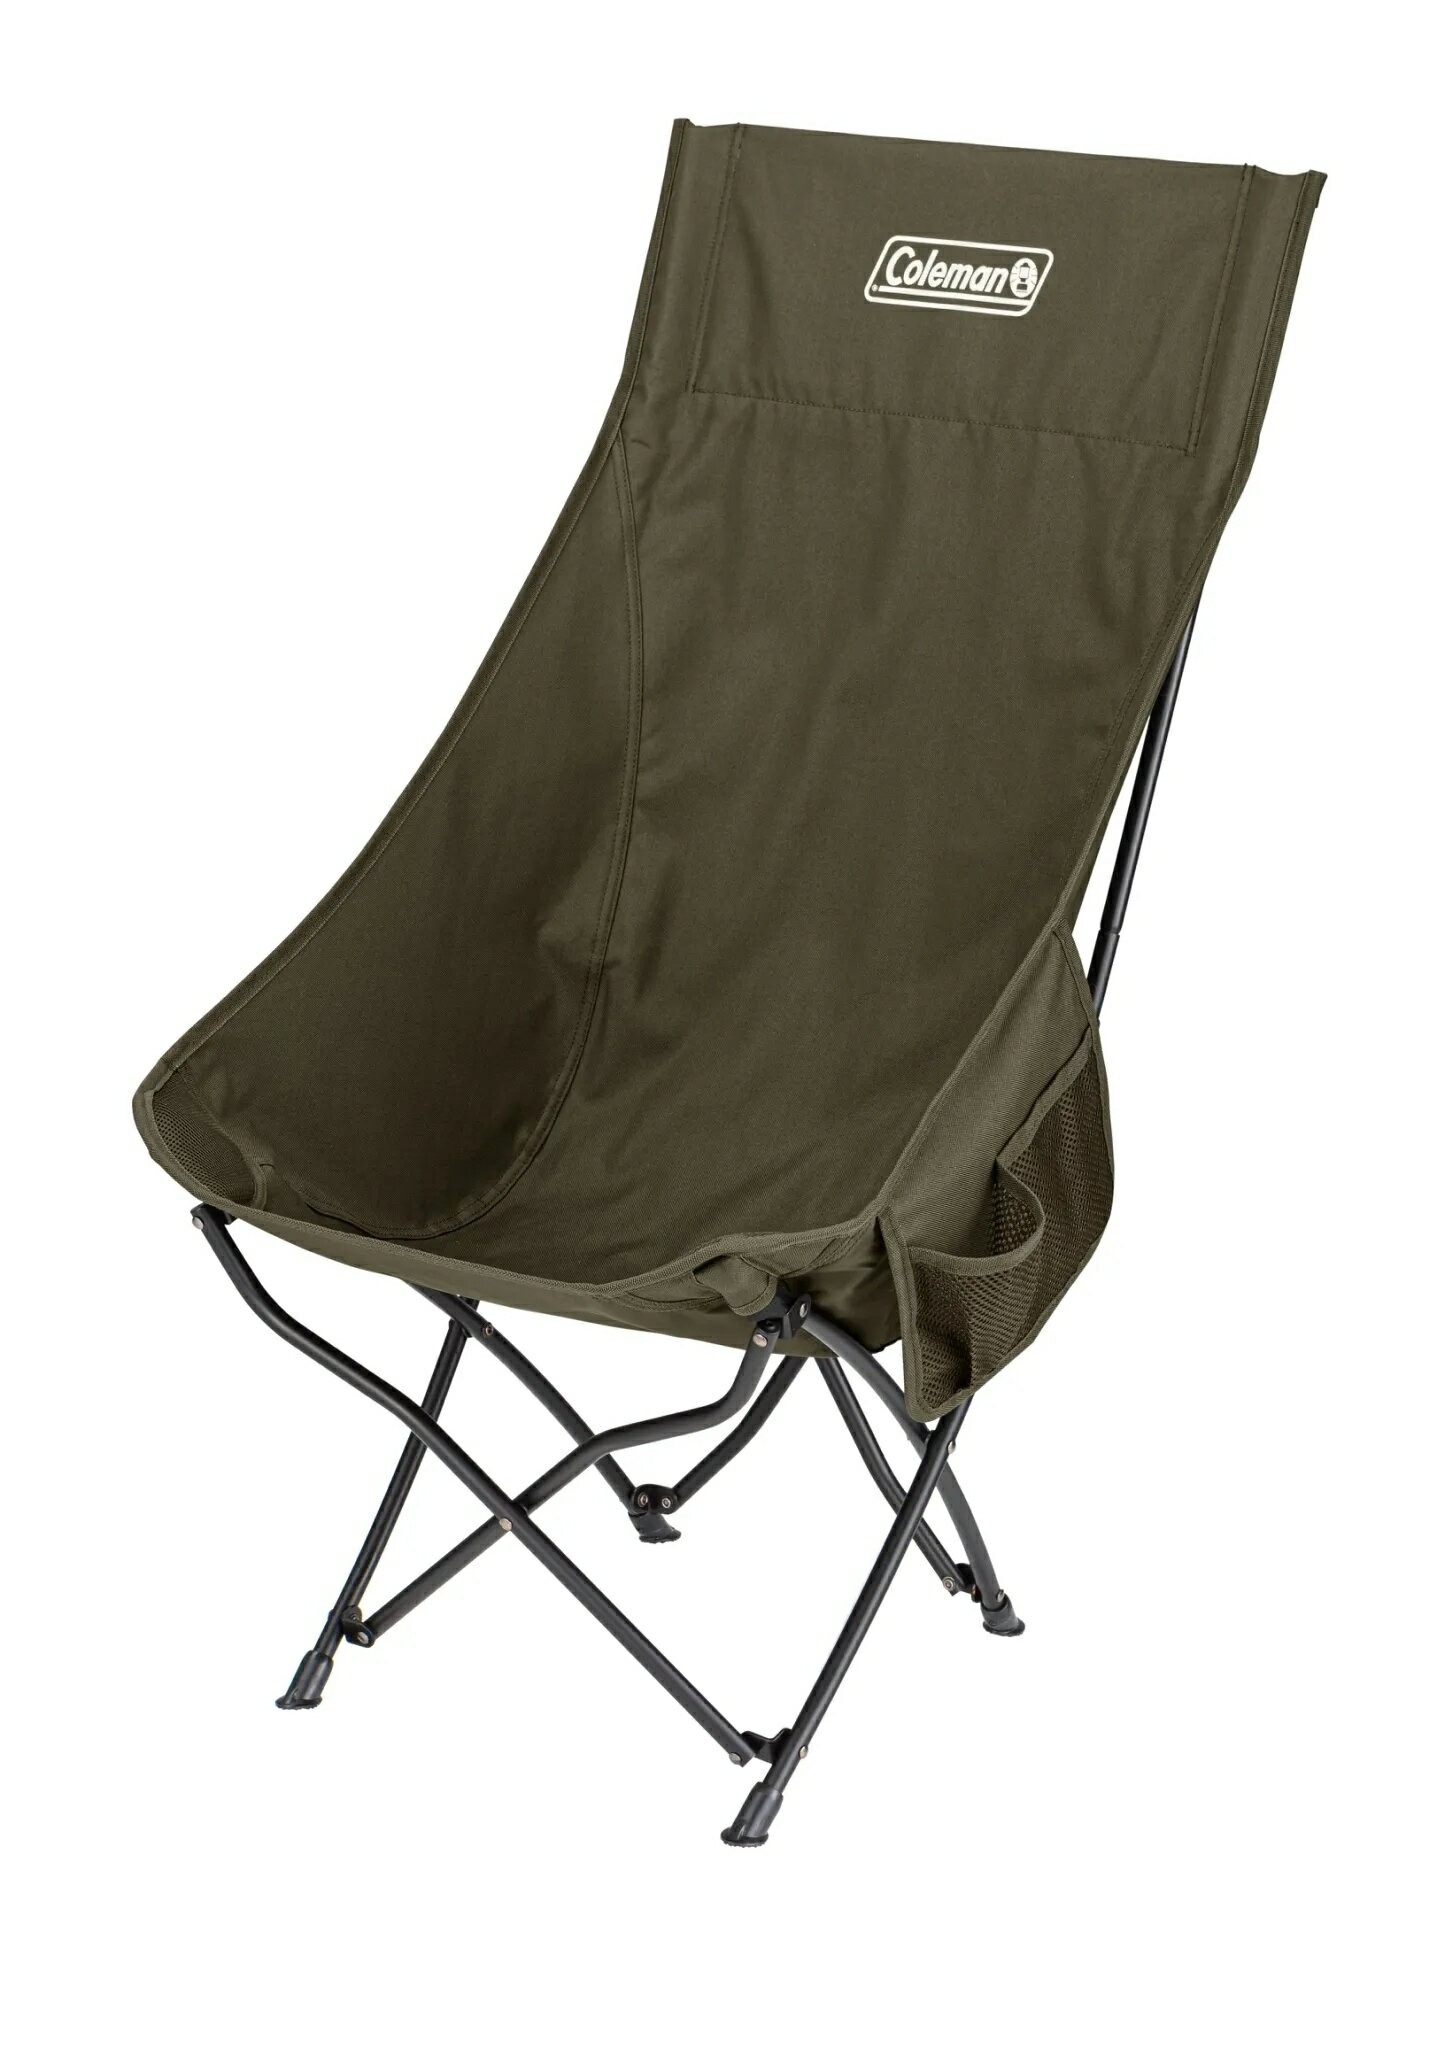 ├登山樂┤美國 Coleman NEXT高背療癒椅-綠橄欖 摺疊椅 CM-99216